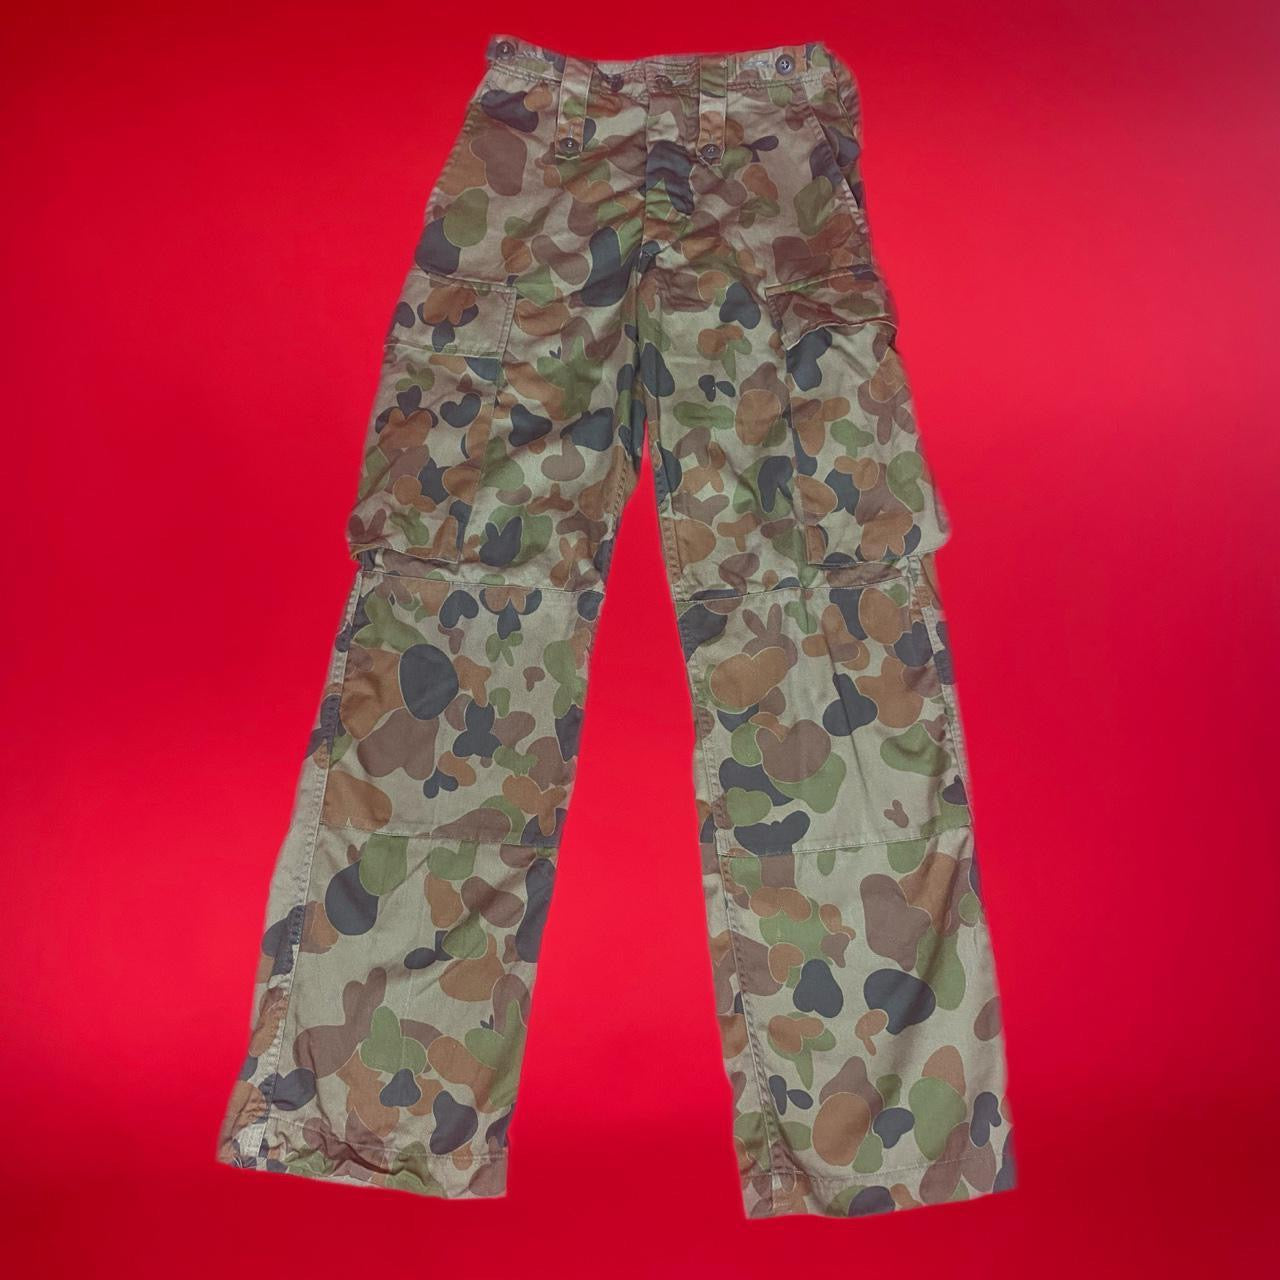 Vintage combat camo pants